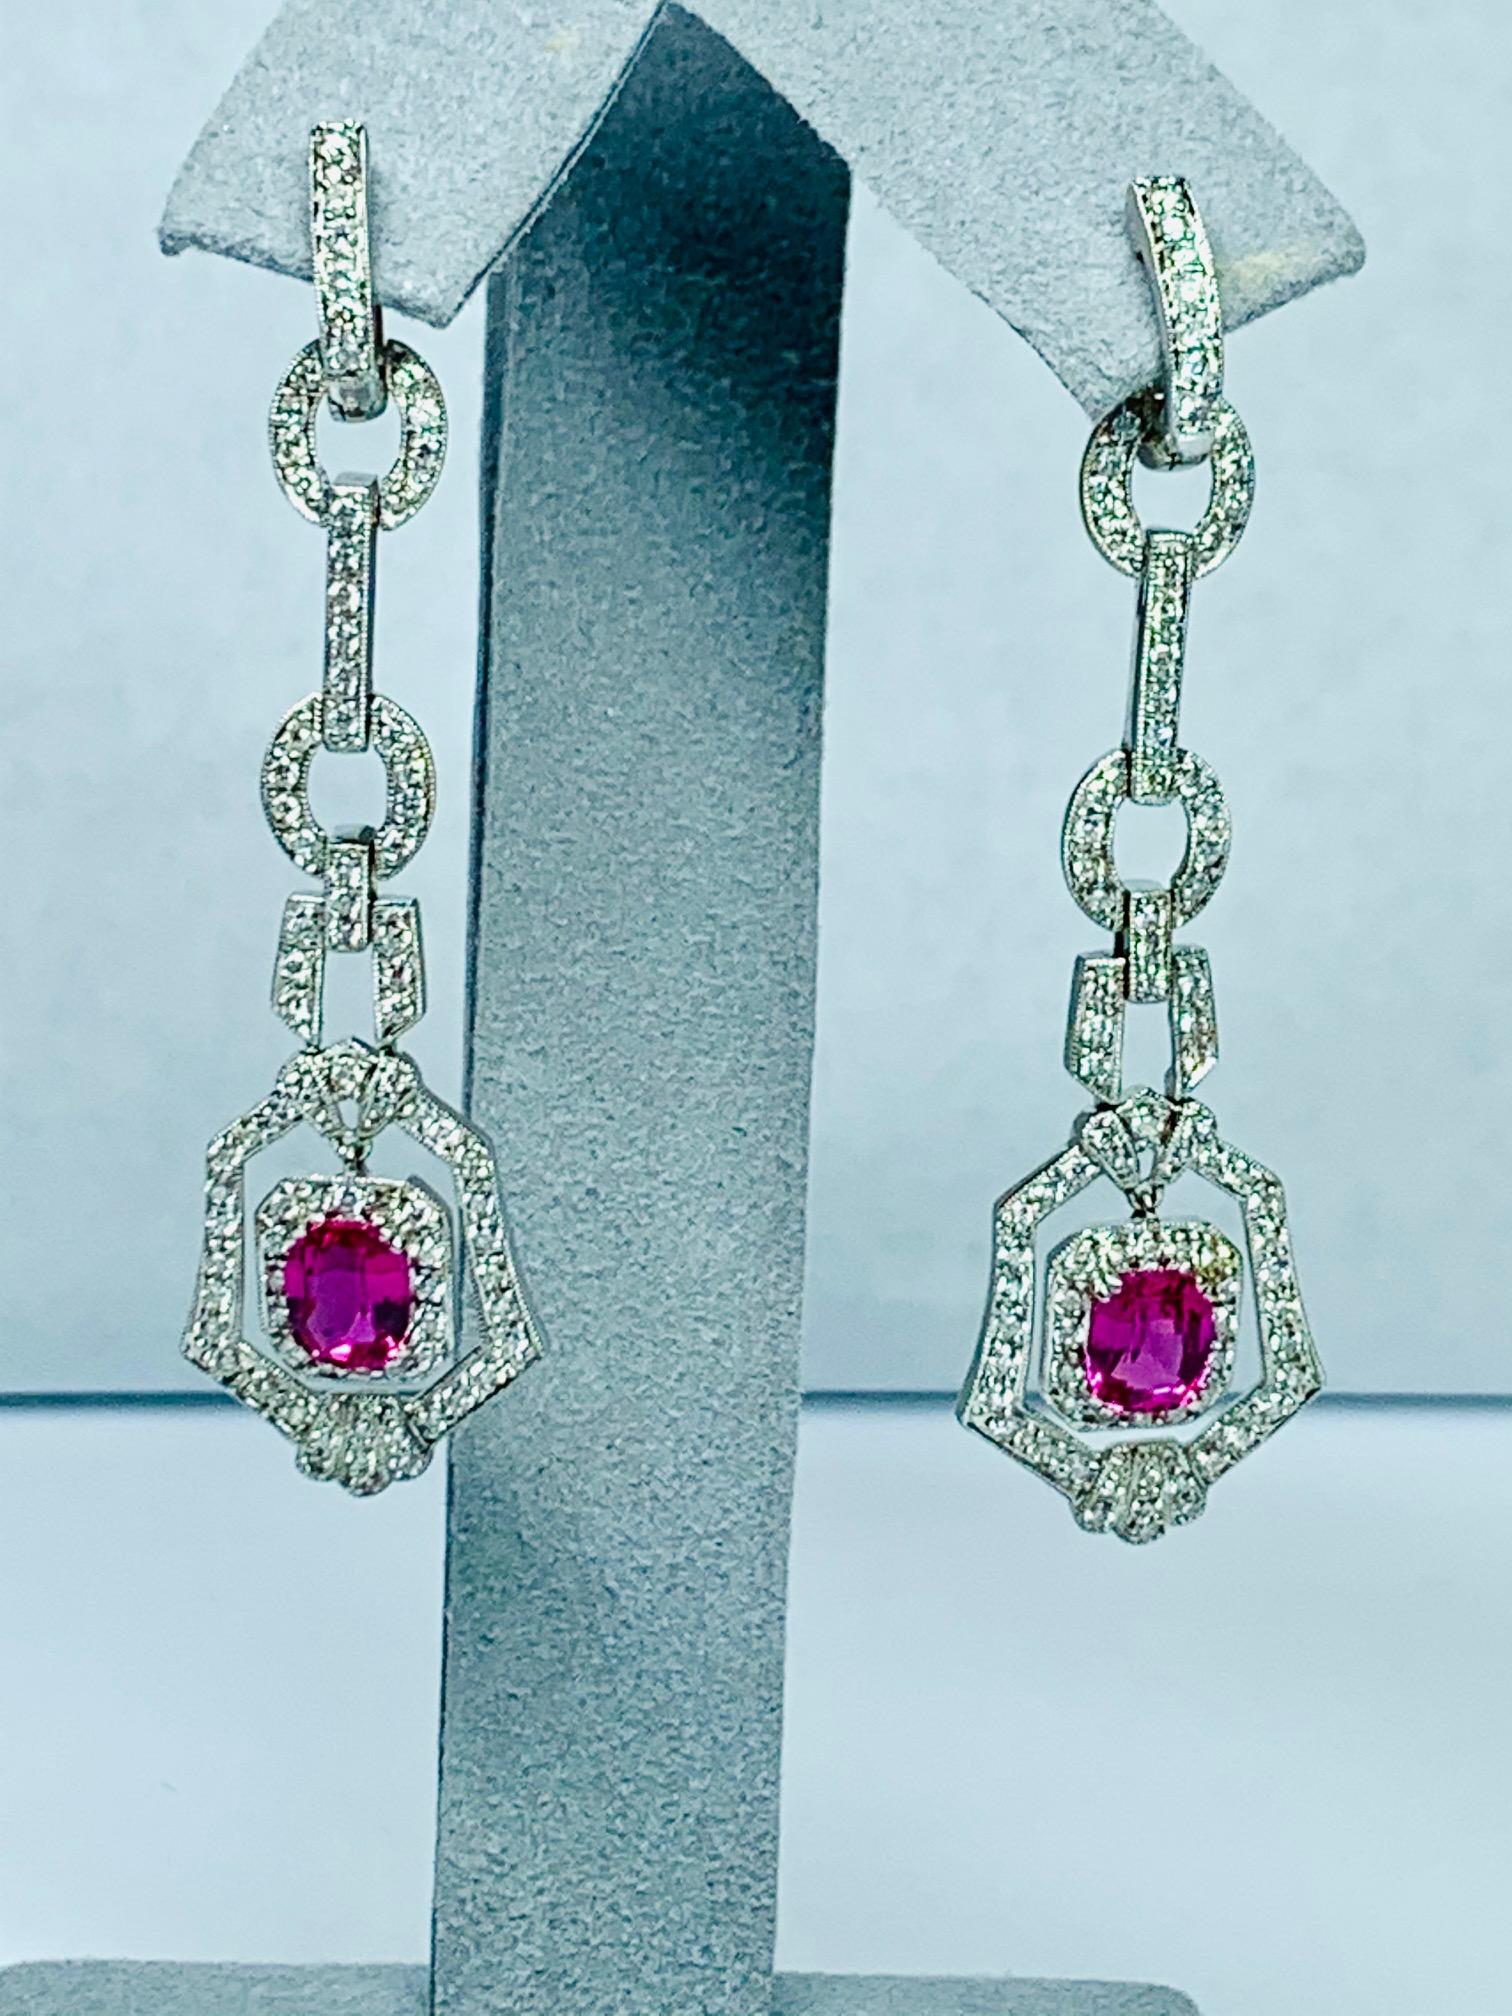 2,90 Carat Kissen rosa Saphir, Hitze, in 18k Weißgold Kronleuchter / baumeln Stil Ohrringe mit 2,0 Karat weißen Vs-si1 Diamanten umgeben gesetzt.